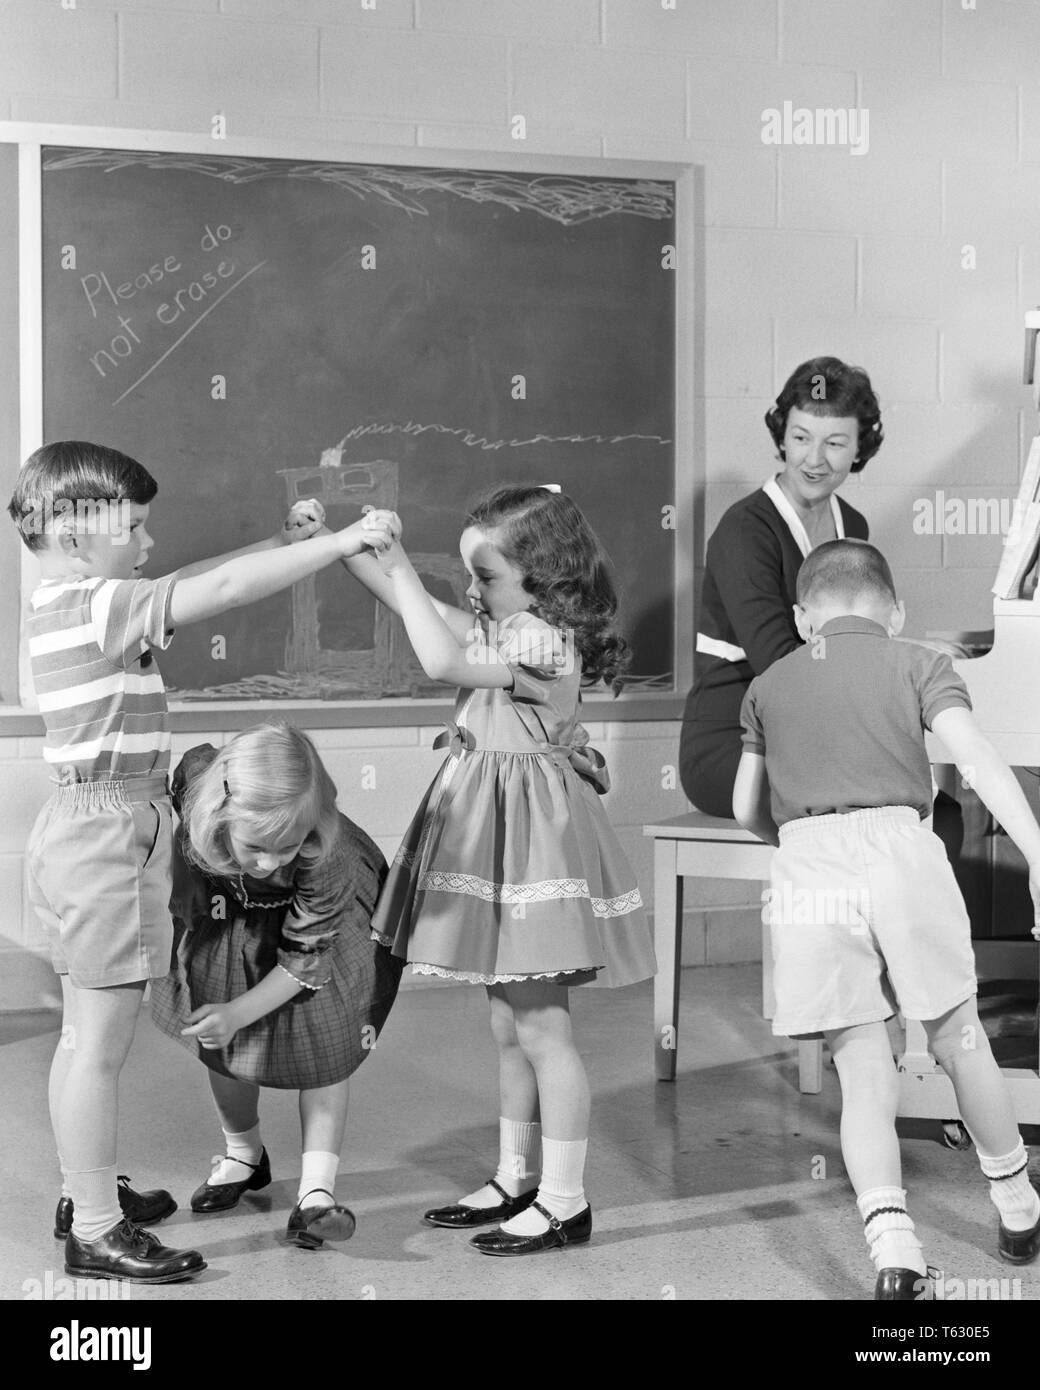 Années 1950 Années 1960 FEMME jouant du piano tout en enseignant aux élèves de maternelle CHILDERN danser et jouer - s13150 HAR001 HARS 1 enseignants son mode de vie juvénile cinq femelles musicien 5 COPIE ESPACE SANTÉ PLEINE LONGUEUR D'AMITIÉ, mi-longueur MESDAMES FORME PHYSIQUE LES PERSONNES FAISANT LES HOMMES B&W BONHEUR MARY JANE Instructeur de maternelle d'INSTRUMENTS DE MUSIQUE MÉTIERS ÉDUCATEUR CONNEXION COOPÉRATION ÉDUQUER LES ÉDUCATEURS l'IMAGINATION JOUE LES JEUNES INSTRUCTEURS MID-ADULT MID-ADULT WOMAN ÉCOLE ENSEIGNE LE NOIR ET BLANC L'ORIGINE ETHNIQUE CAUCASIENNE HAR001 old fashioned Banque D'Images